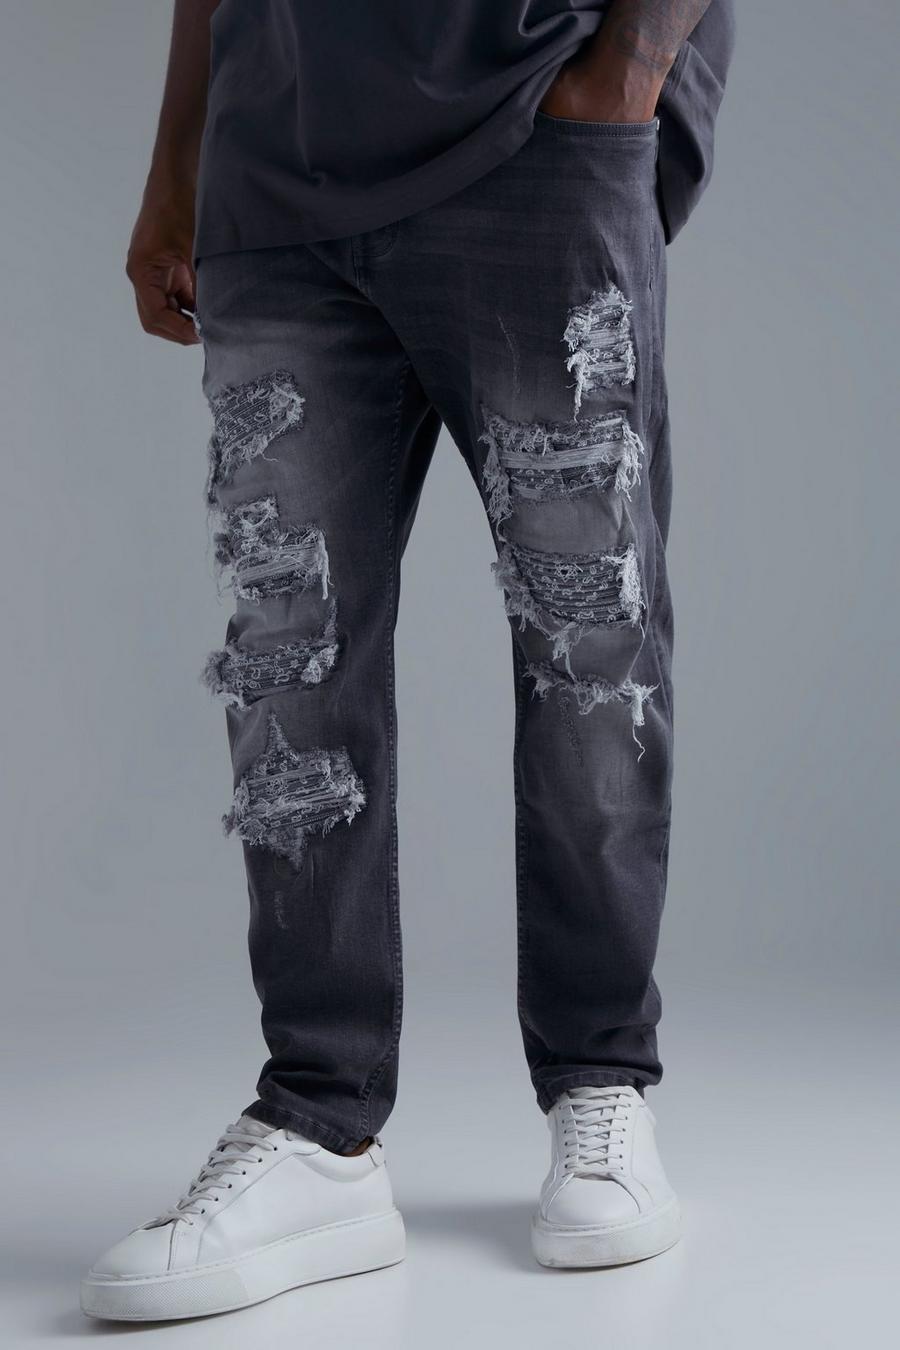 אפור grigio סקיני ג'ינס עם דוגמת בנדנה, קרעים וטלאים בצביעה כפולה למידות גדולות